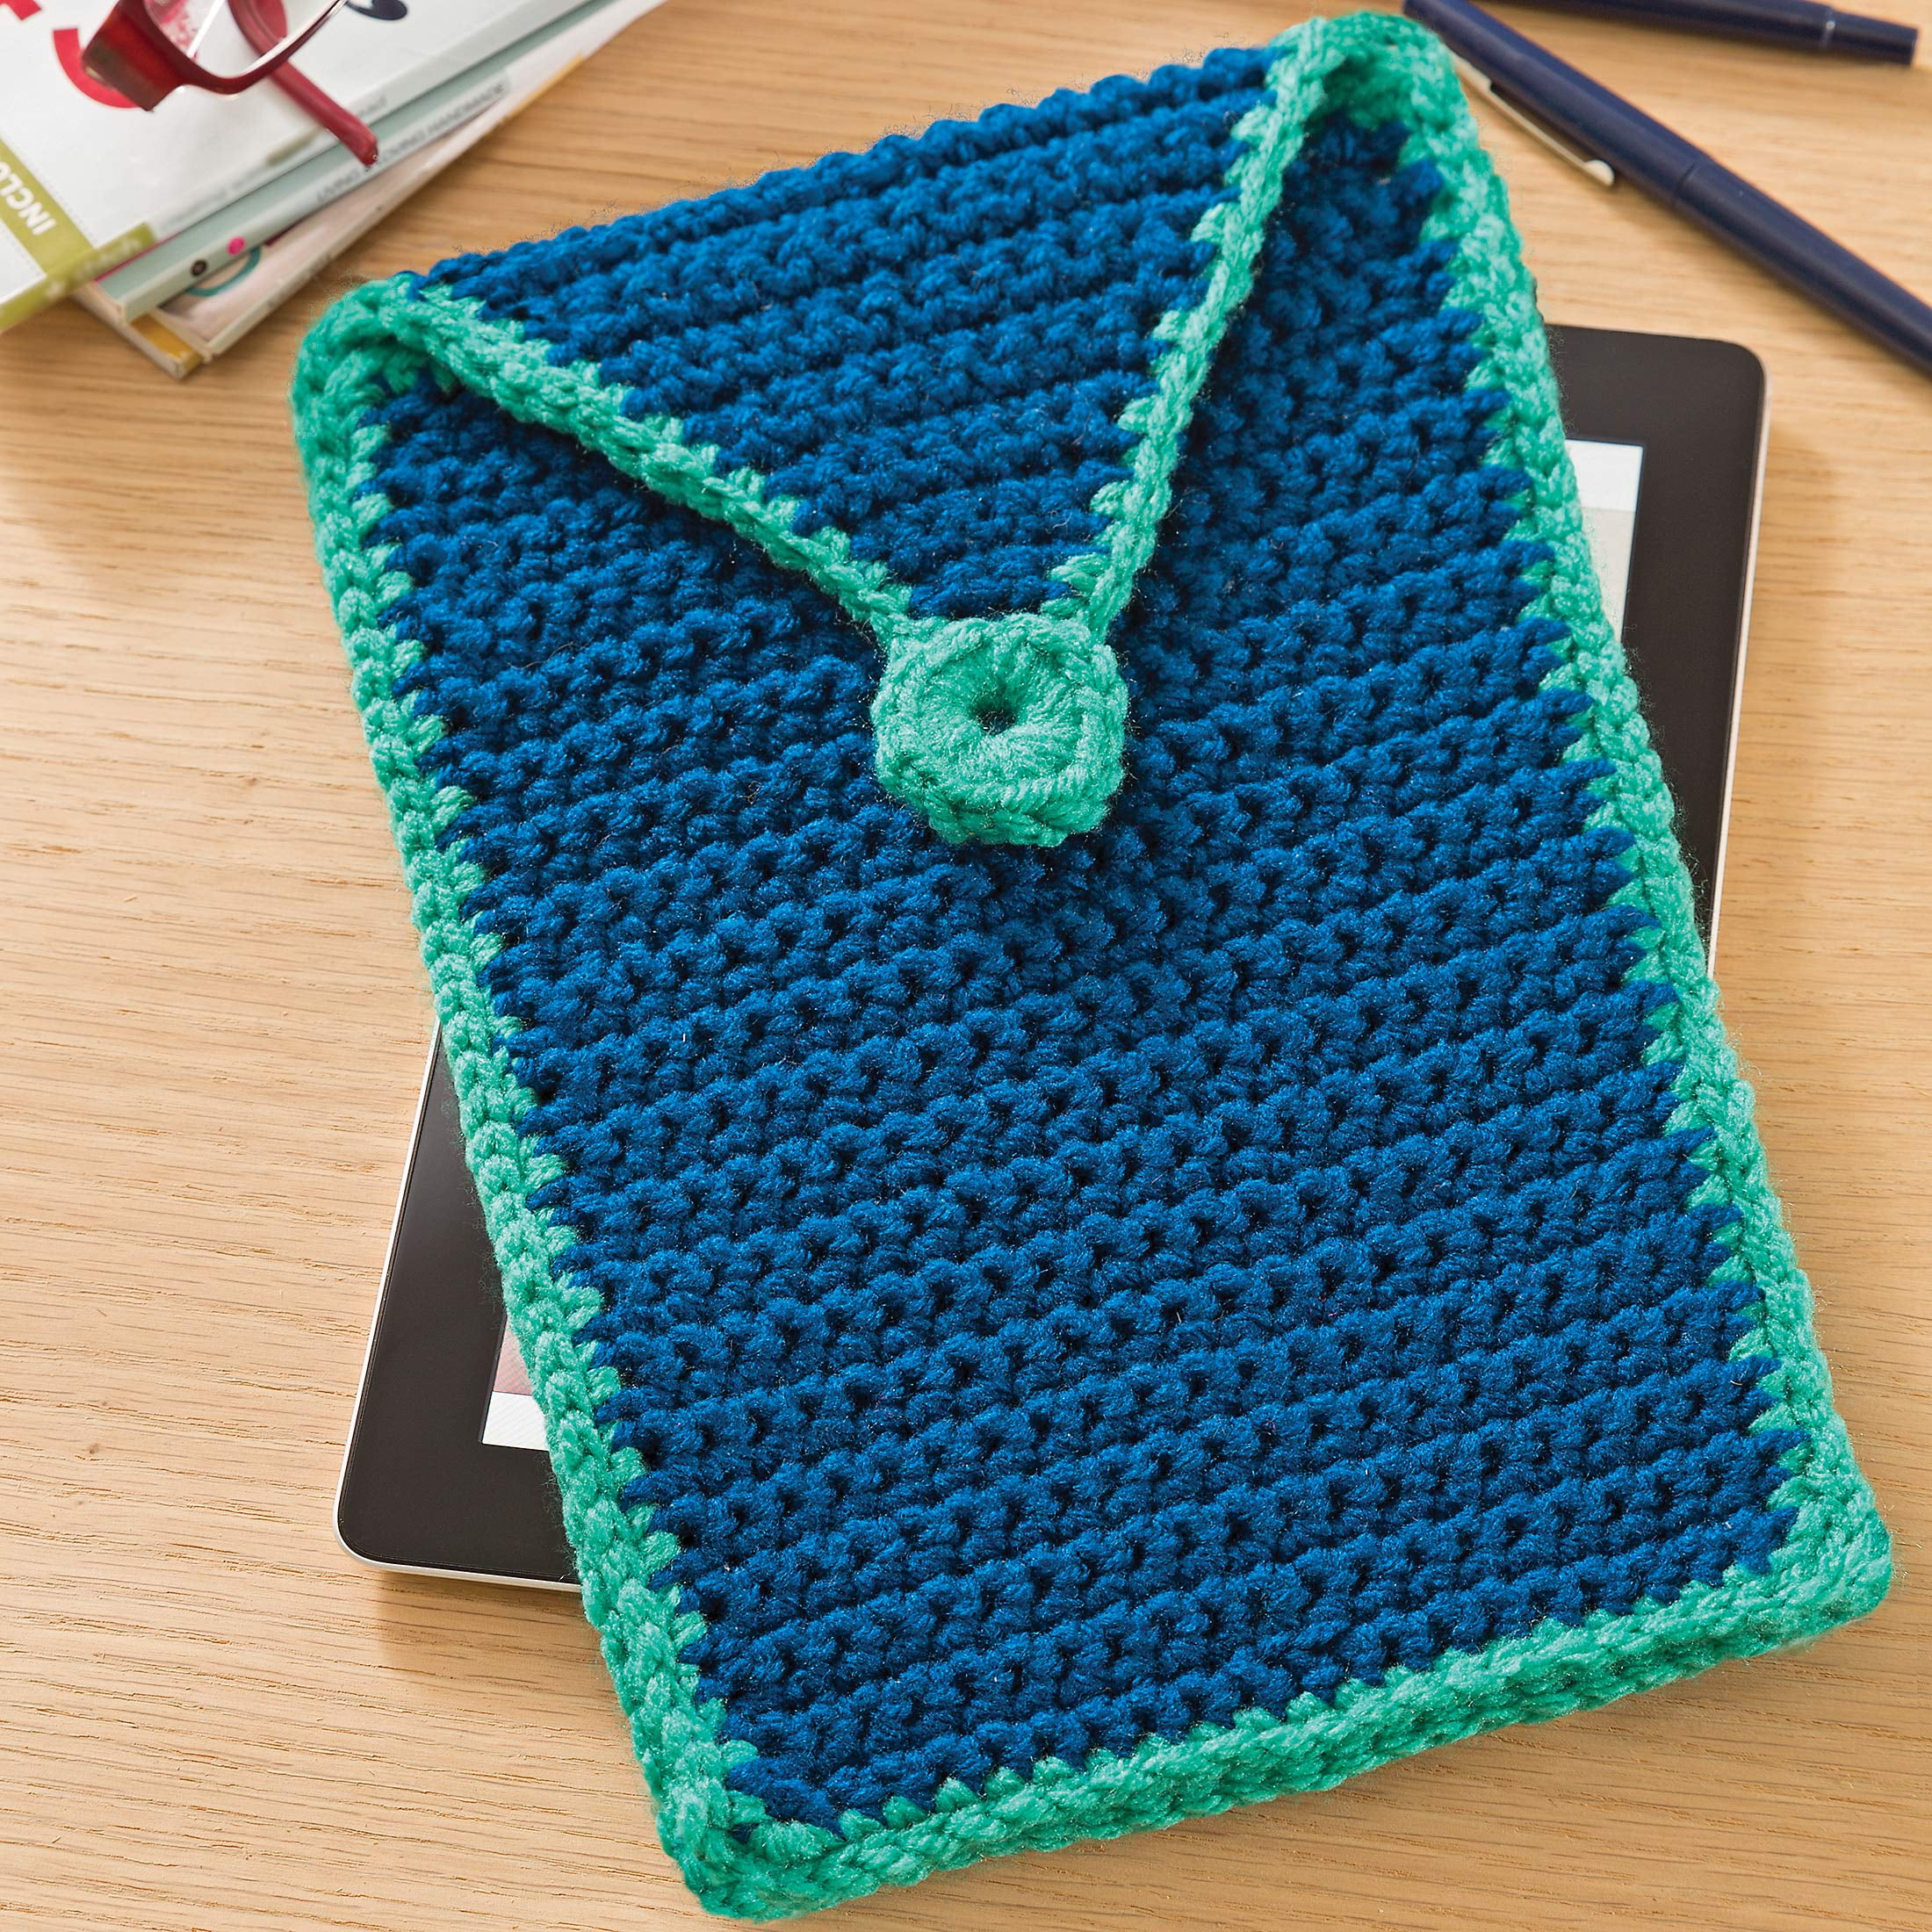 Simplicity Boye Crochet Hook Set, Size G,H,I, 3 Piece